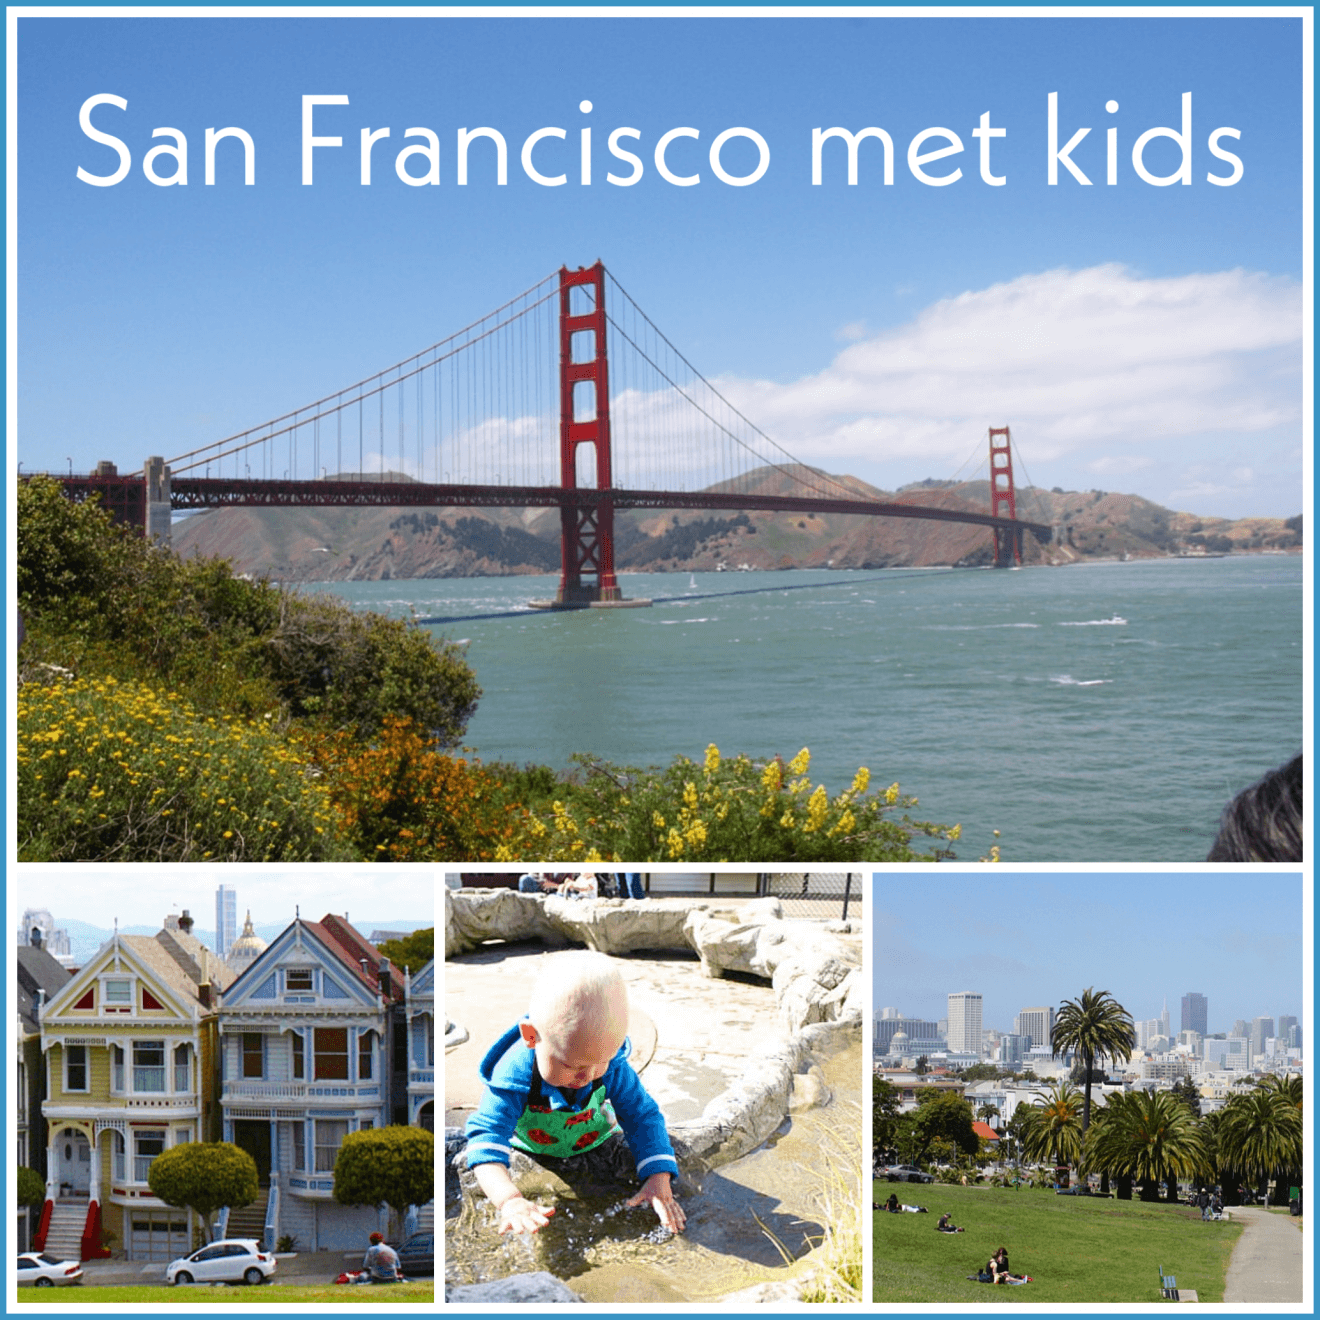 San Francisco met kids: kindvriendelijke tips van een local